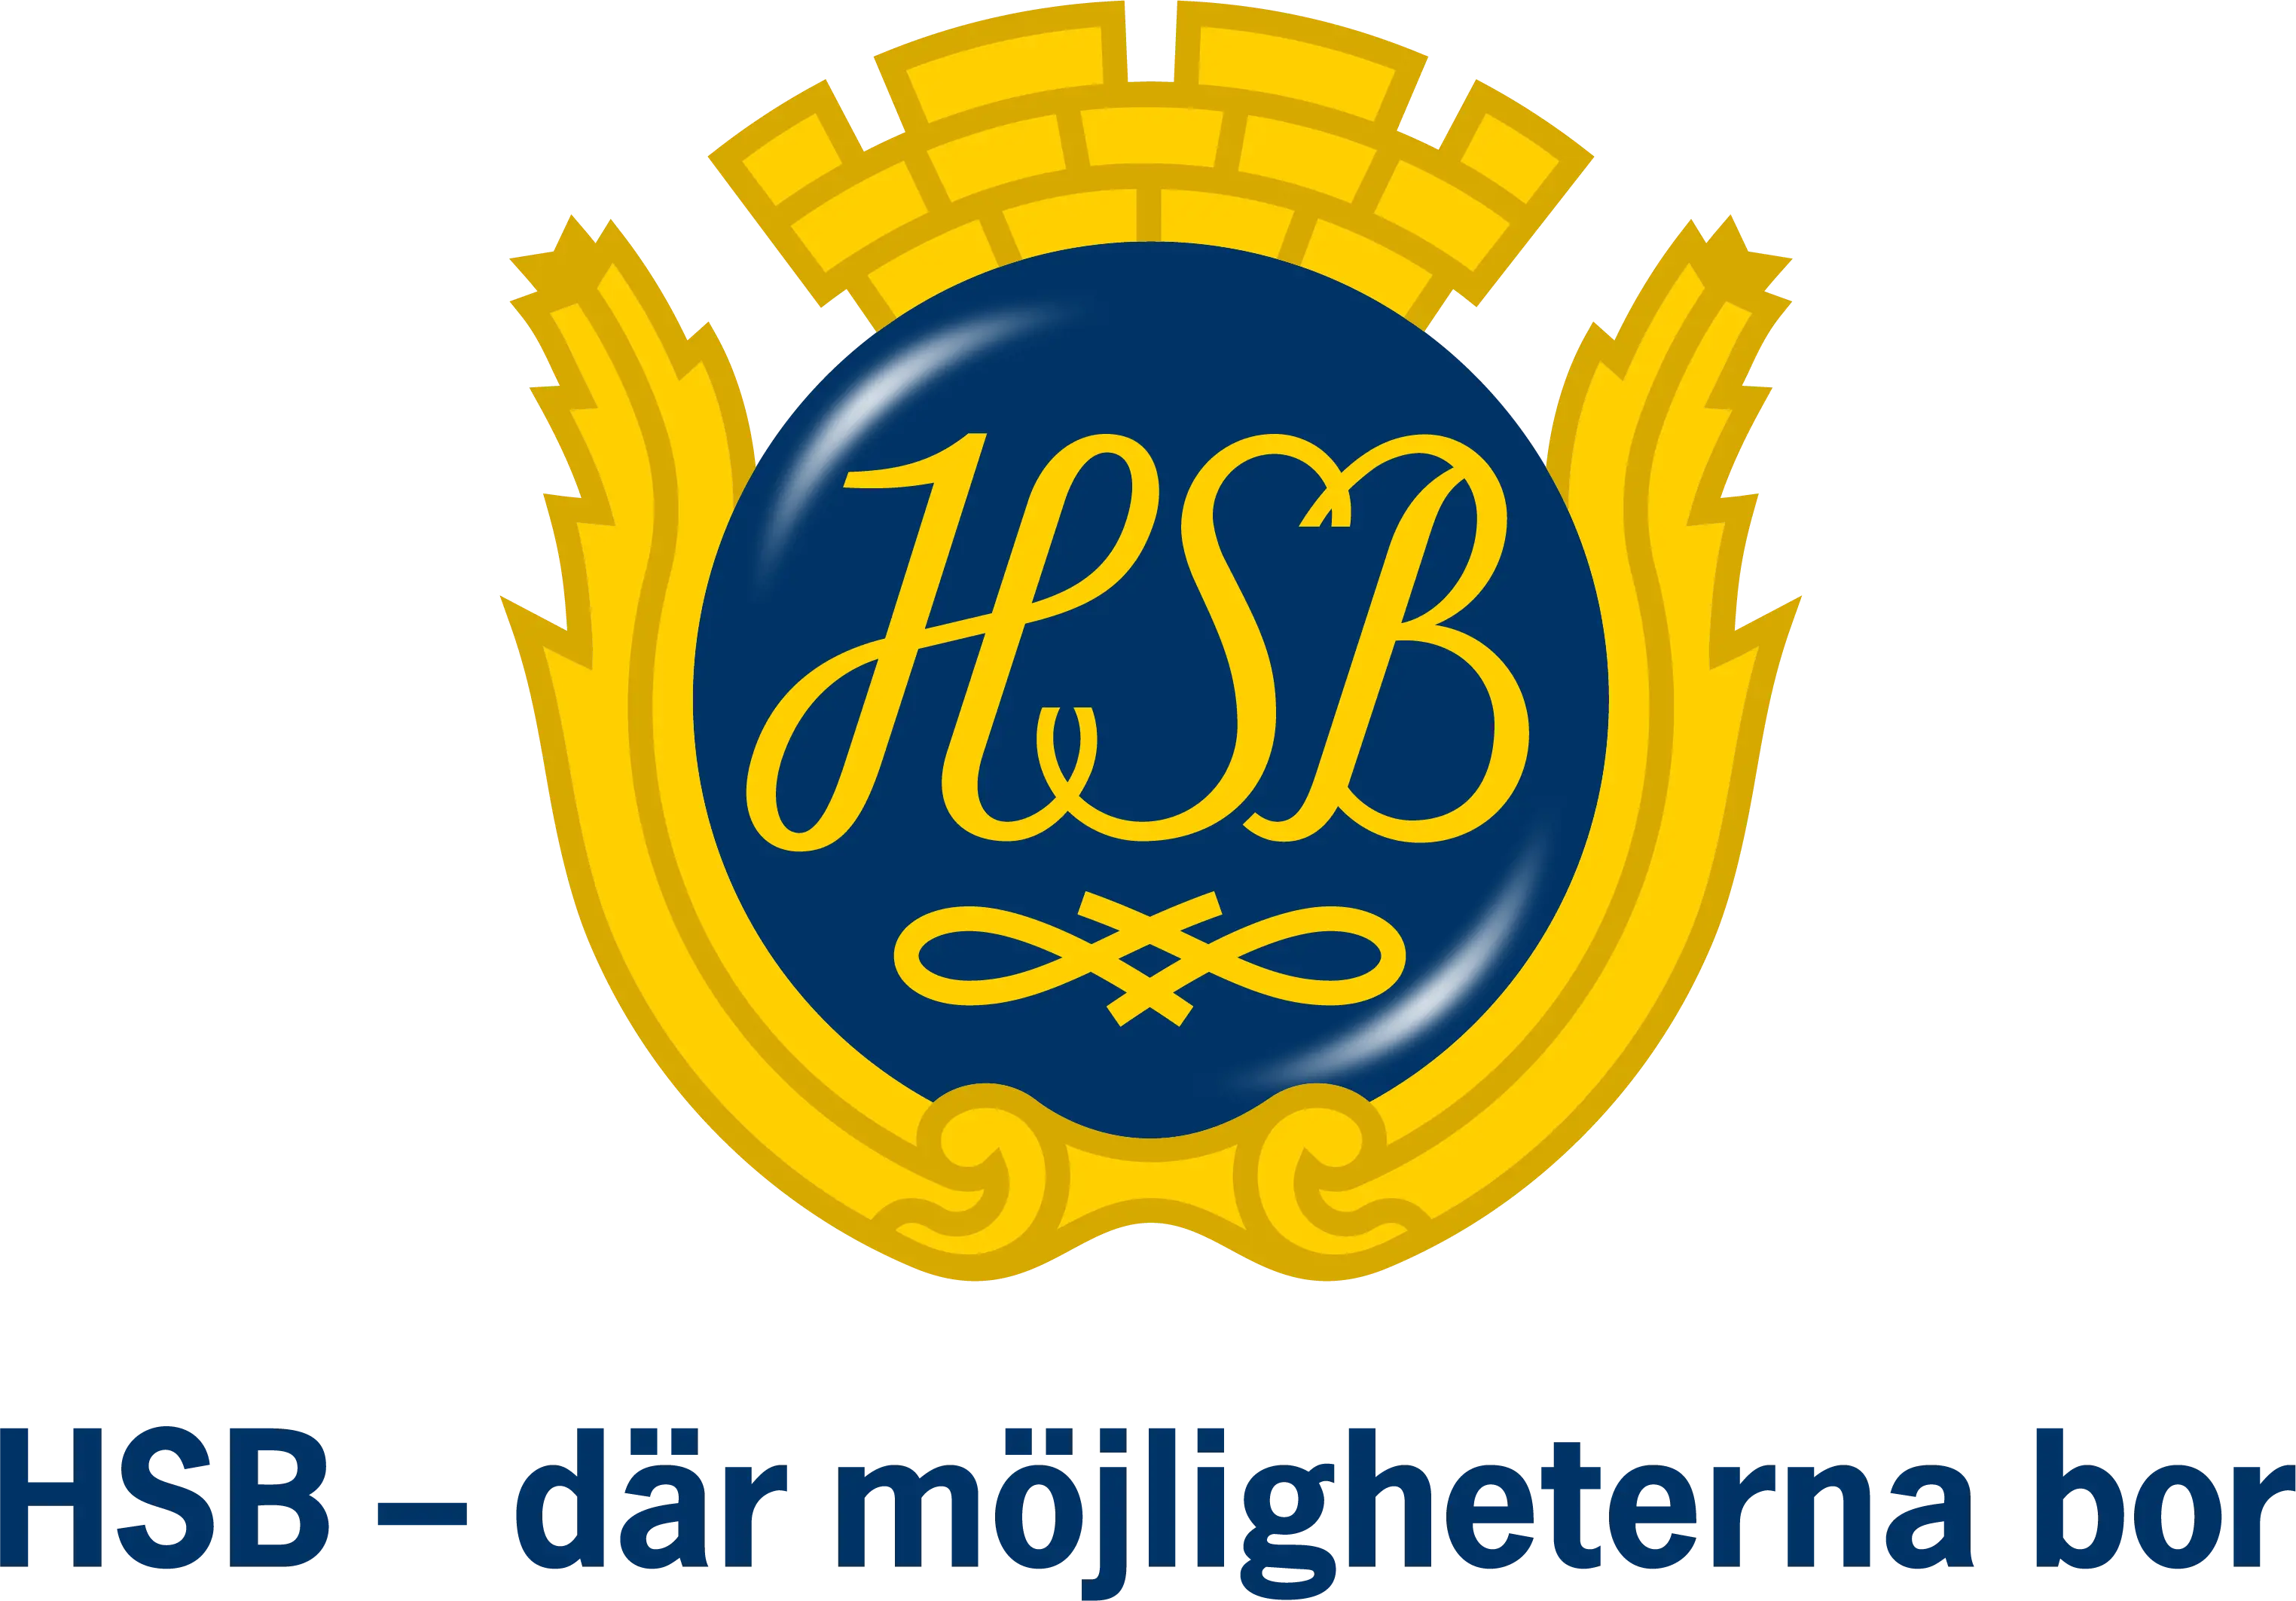 HSB's logo.